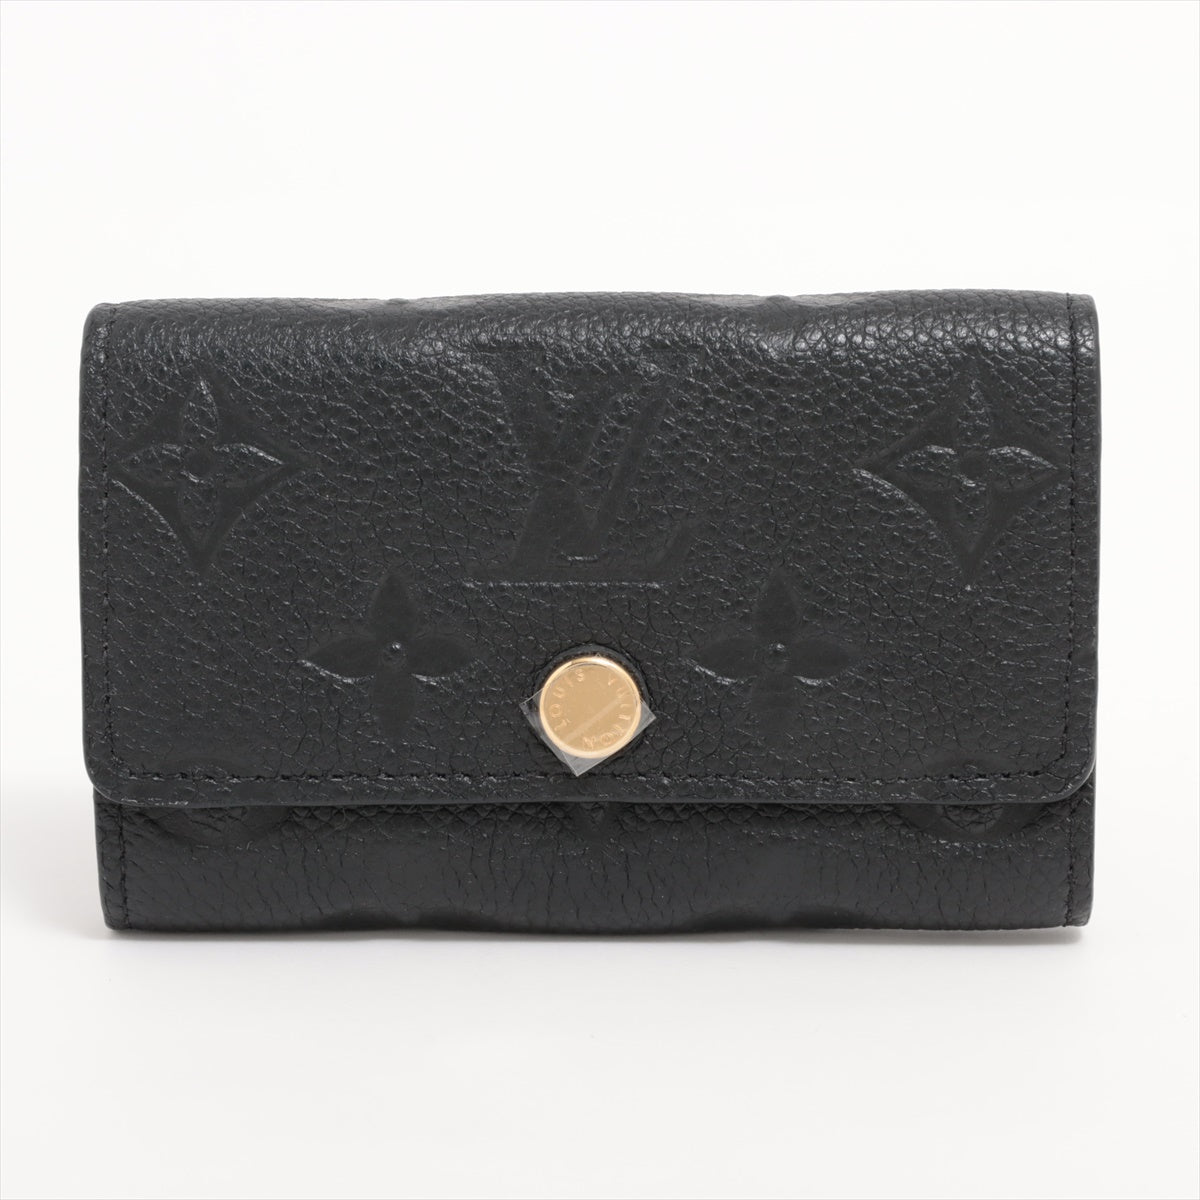 Louis Vuitton monogram empreinte Multiclés 6 M64421 Noir Key Case Responsive RFID